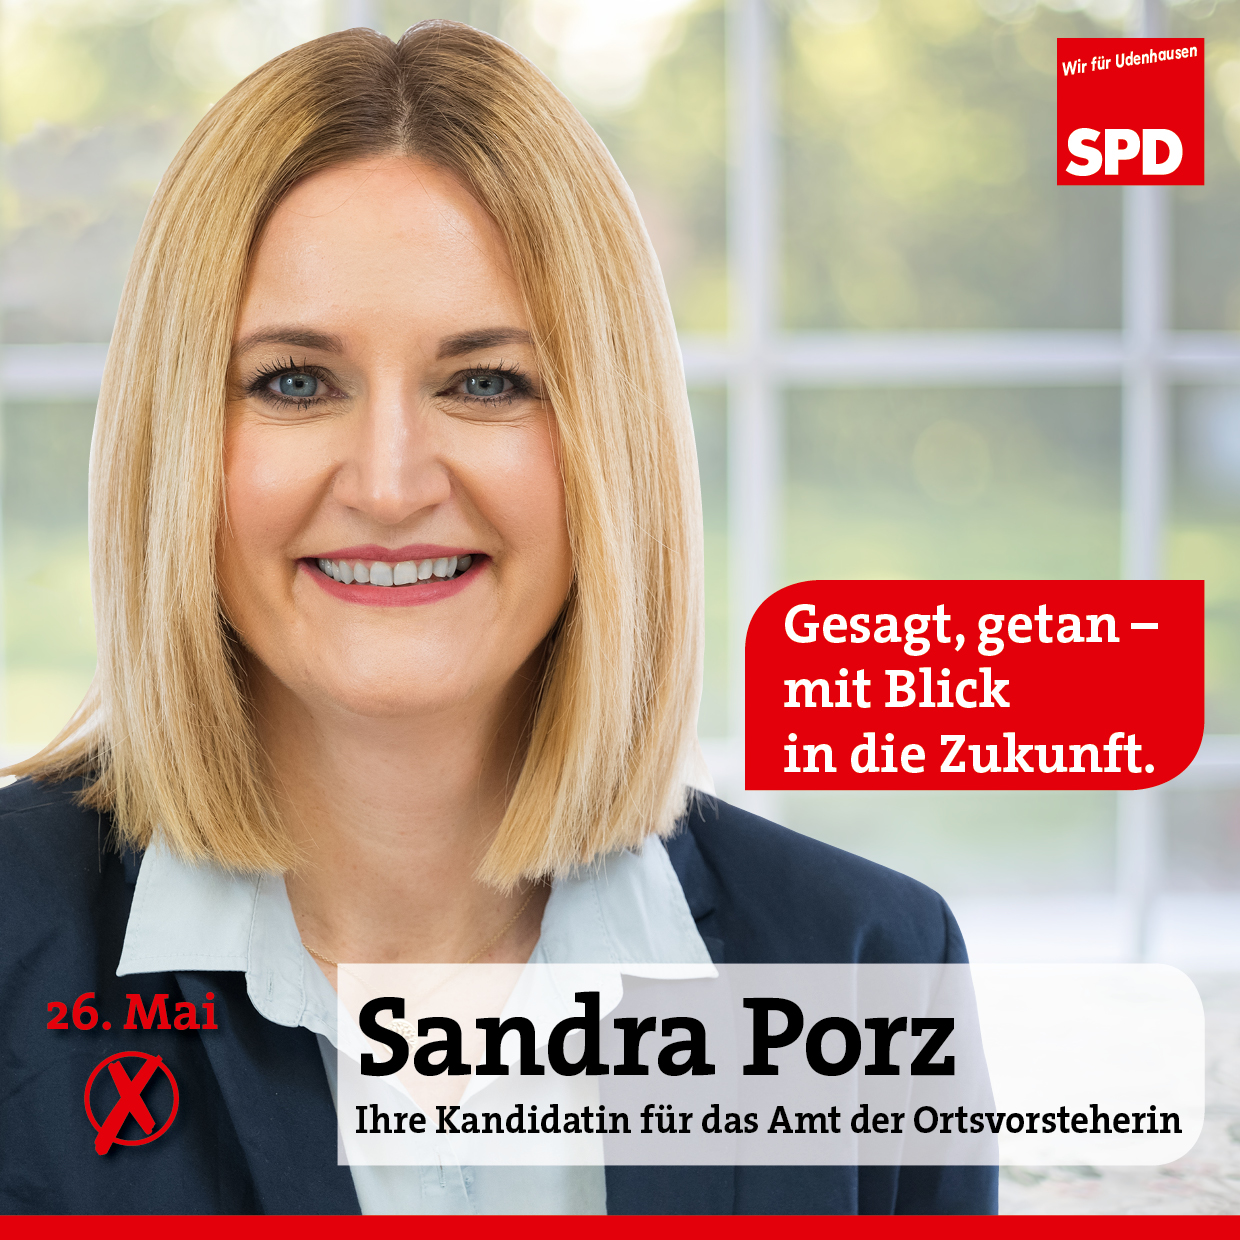 SPD-OBU-A4Q-Web1